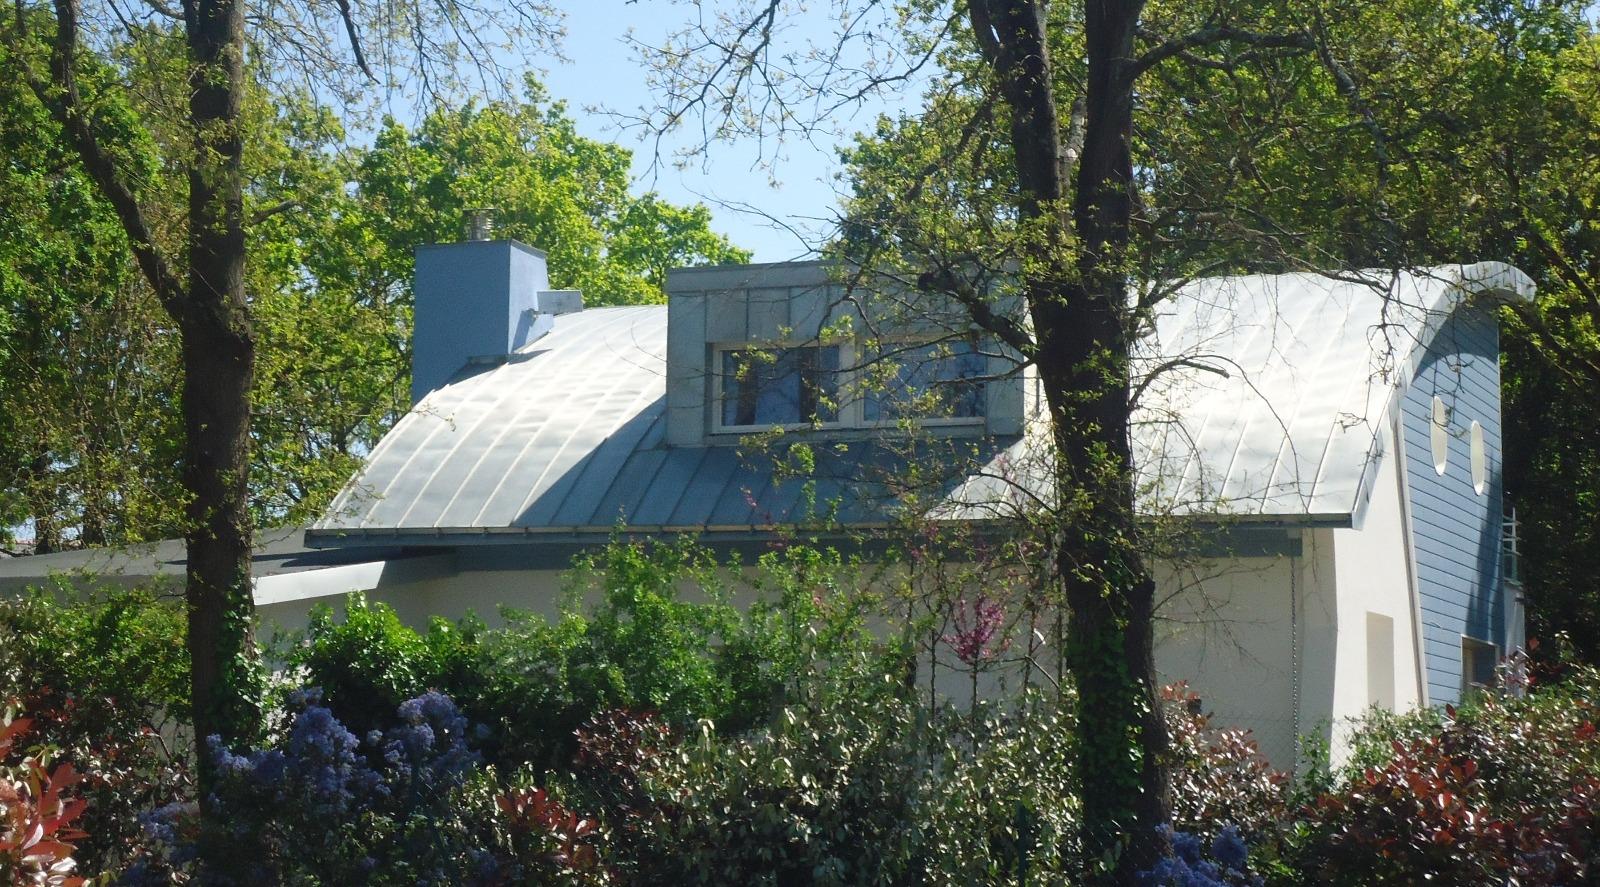 Pornichet - Couverture cintrée et bardage lucarne zinc naturel joint debout - Atelier Absis Architecte Pornichet